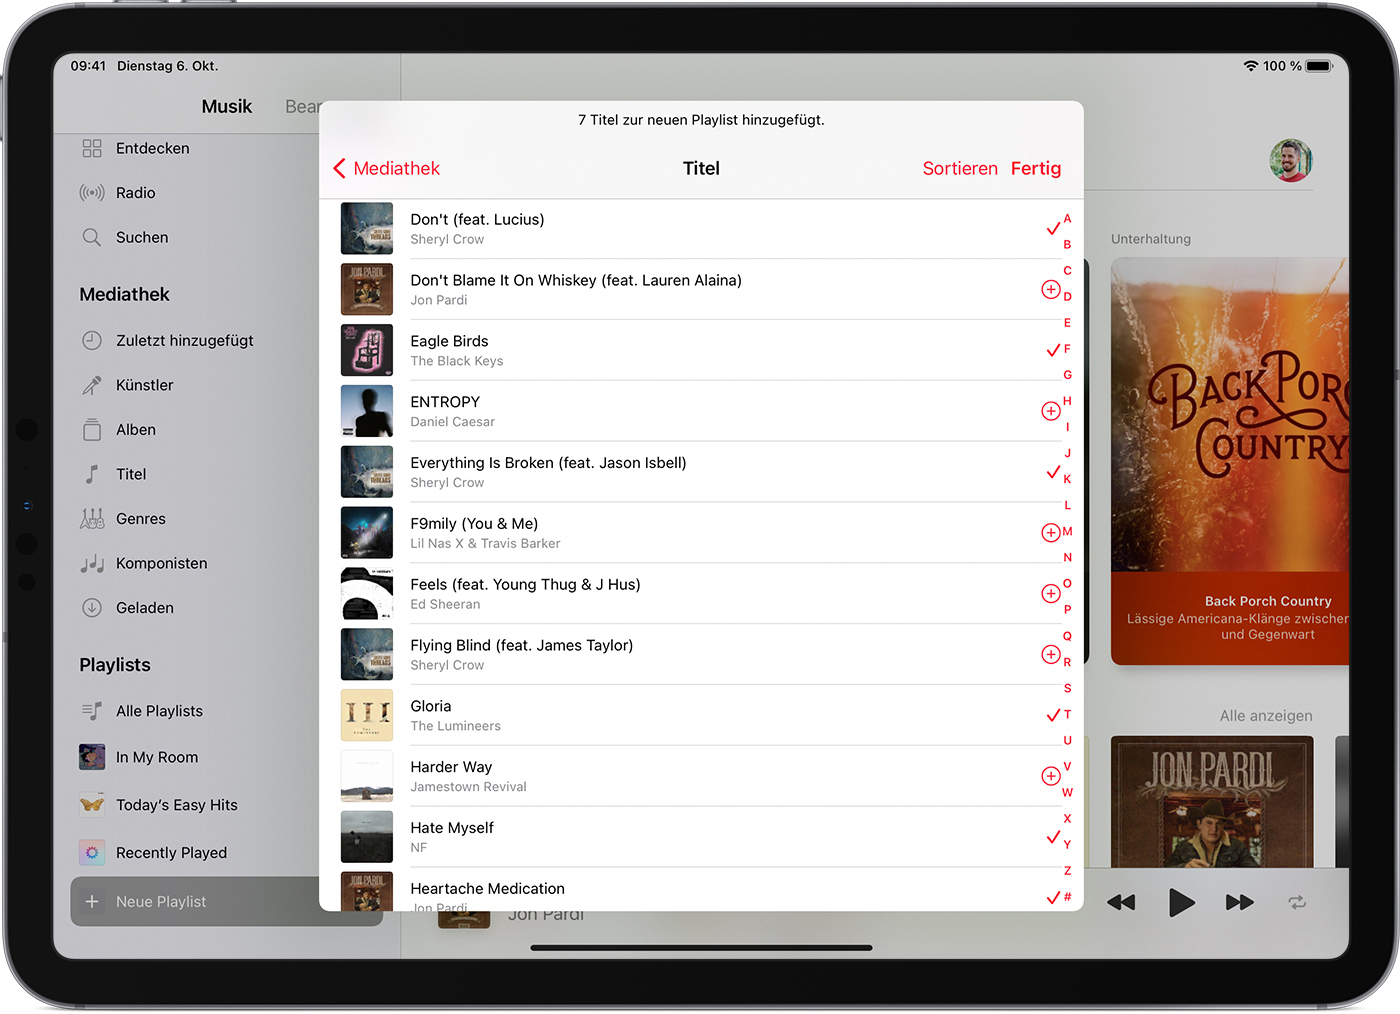 Das iPad zeigt 7 Titel an, die einer neuen Playlist hinzugefügt wurden